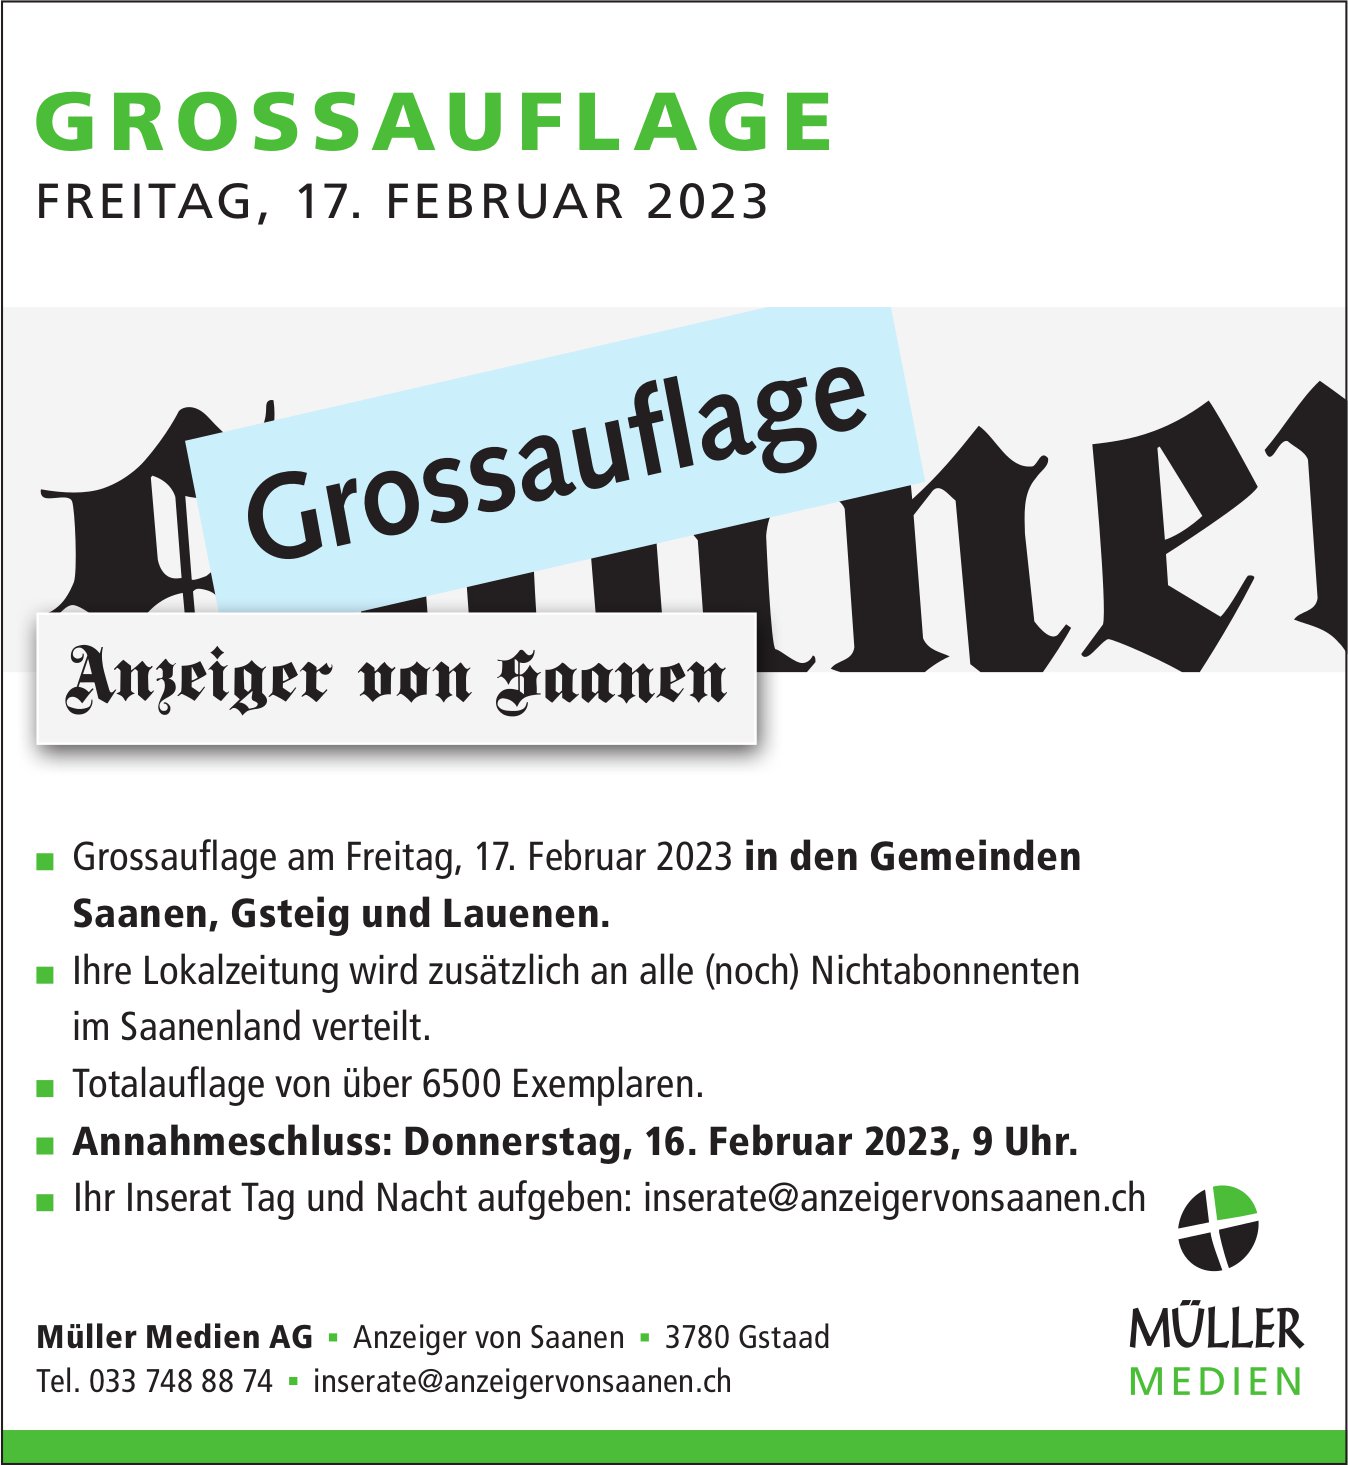 Anzeiger von Saanen, Gstaad - Grossauflage, 17. Februar